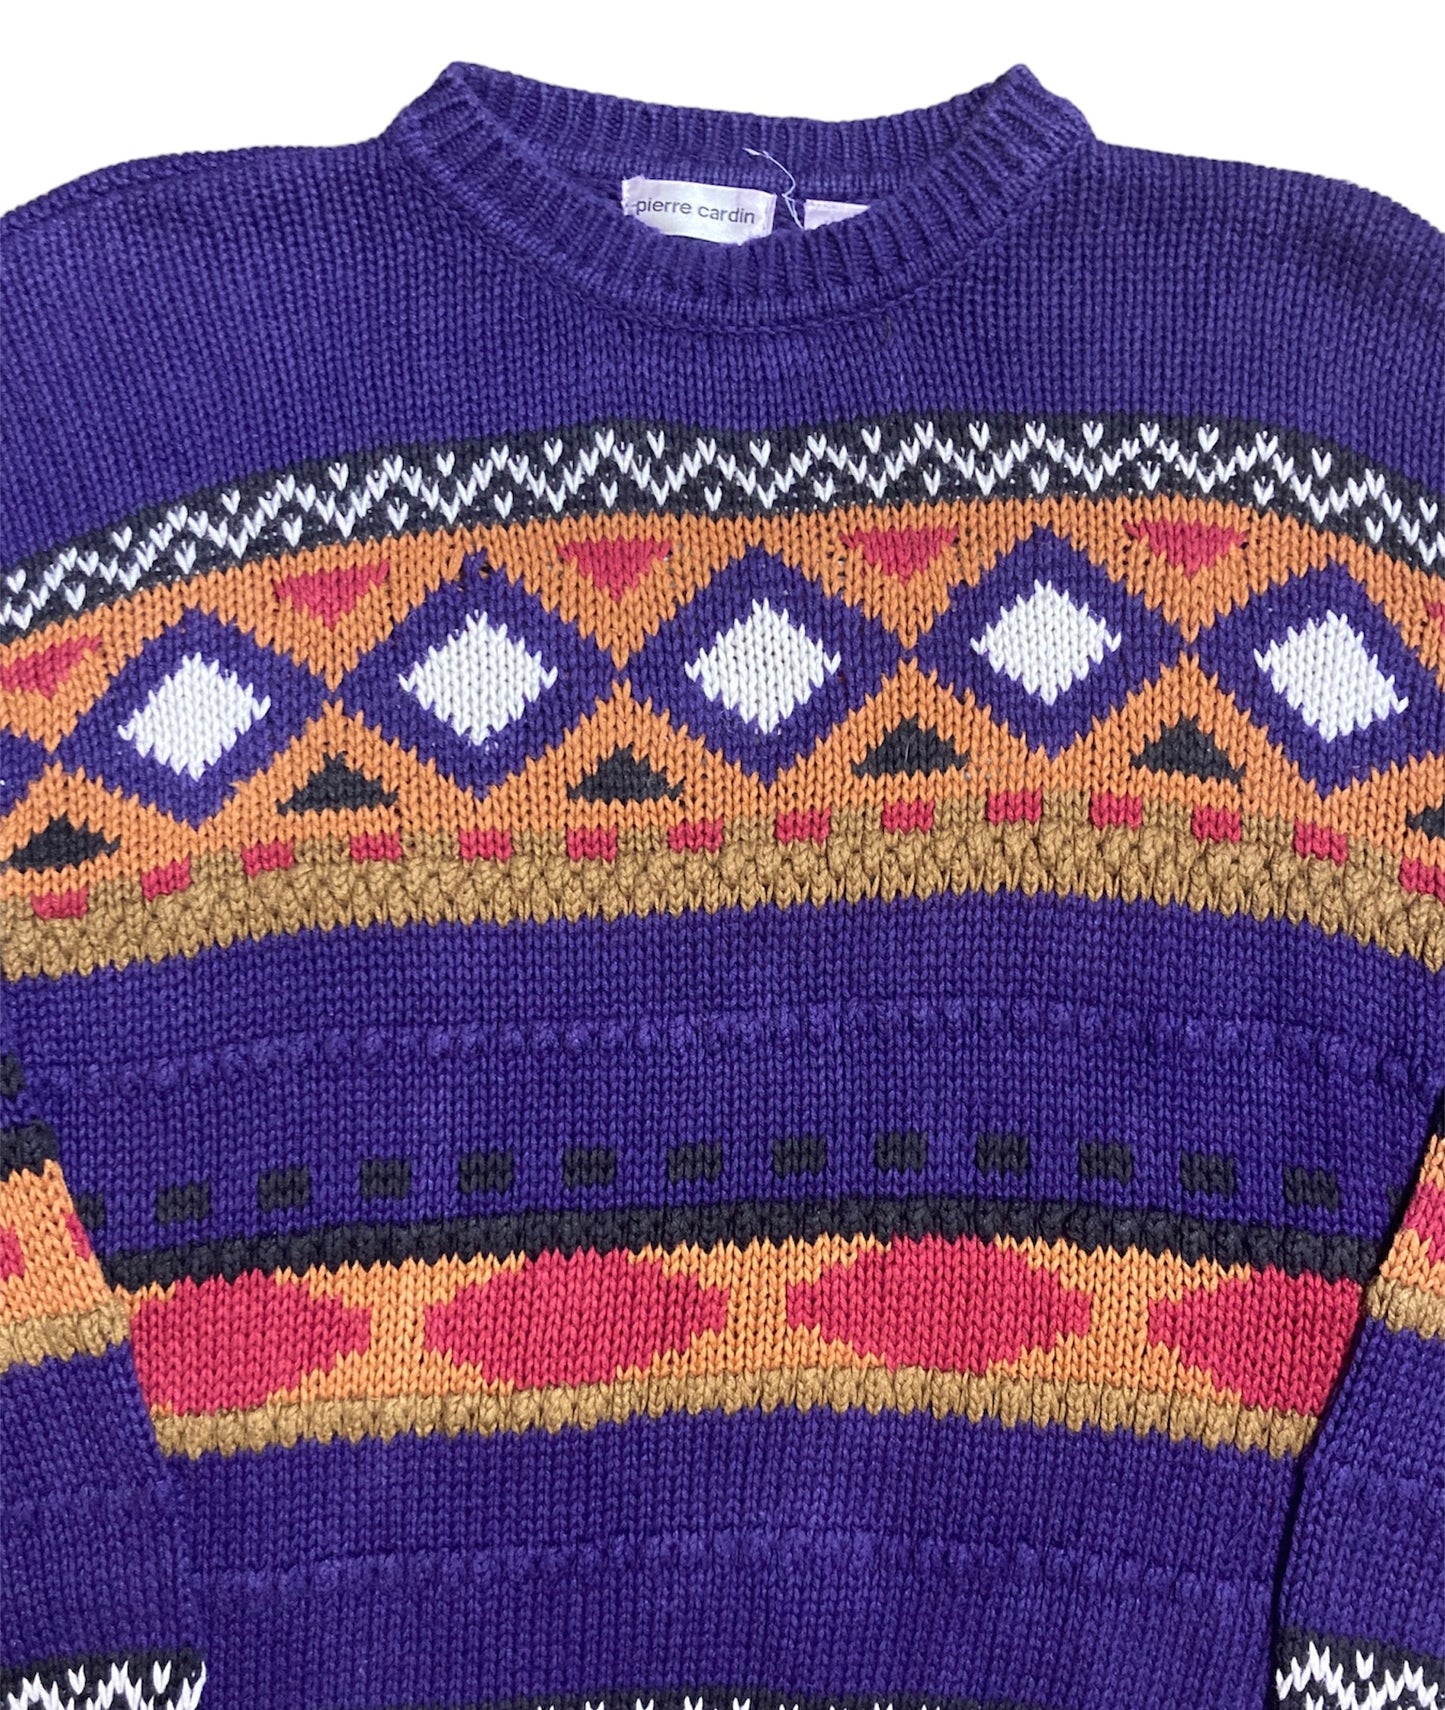 Vintage Pierre Cardin Sweater